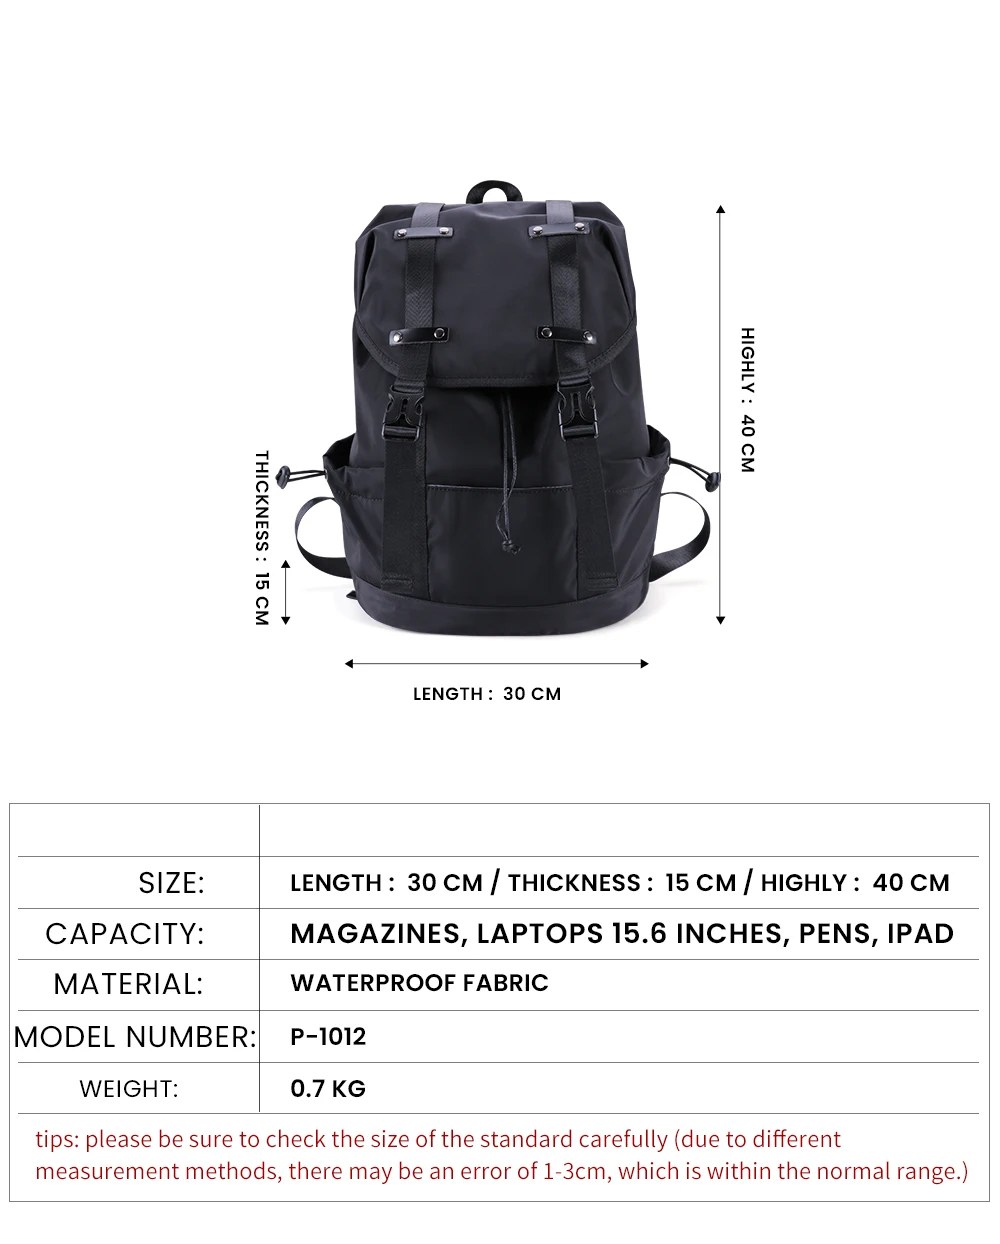 JOYIR водонепроницаемый мужской рюкзак для путешествий на каждый день 15,", сумки для ноутбука, легкие вместительные мужские рюкзаки Mochila с защитой от краж, мужские рюкзаки